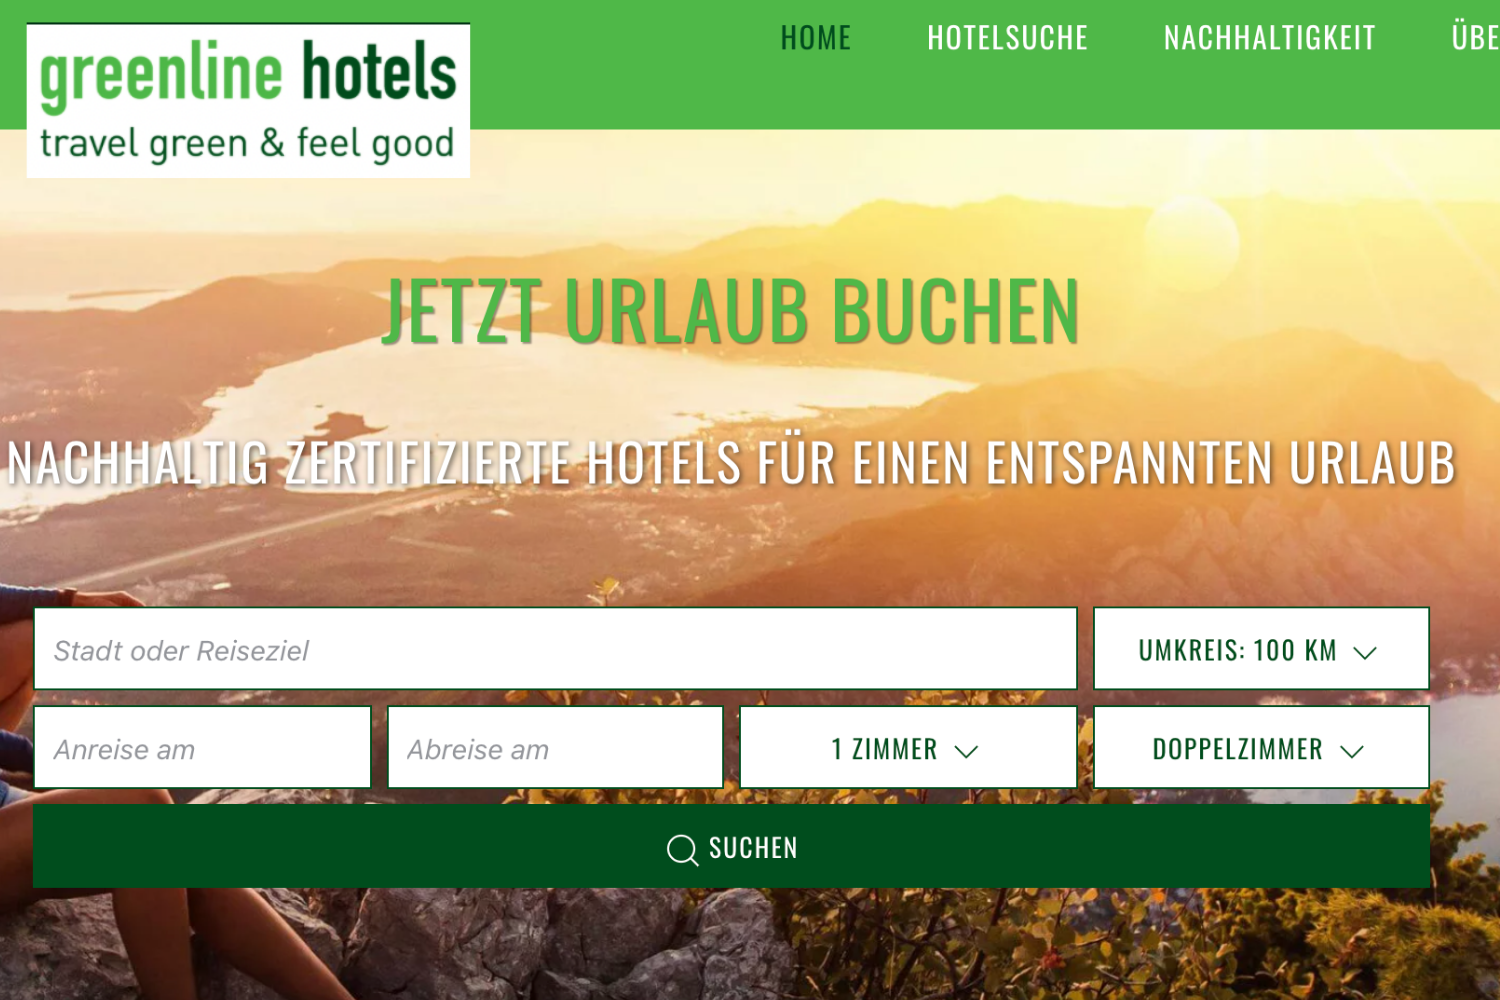 greenline-hotels.com – Die erste nachhaltige Buchungsplattform mit über 560 zertifizierten Hotels